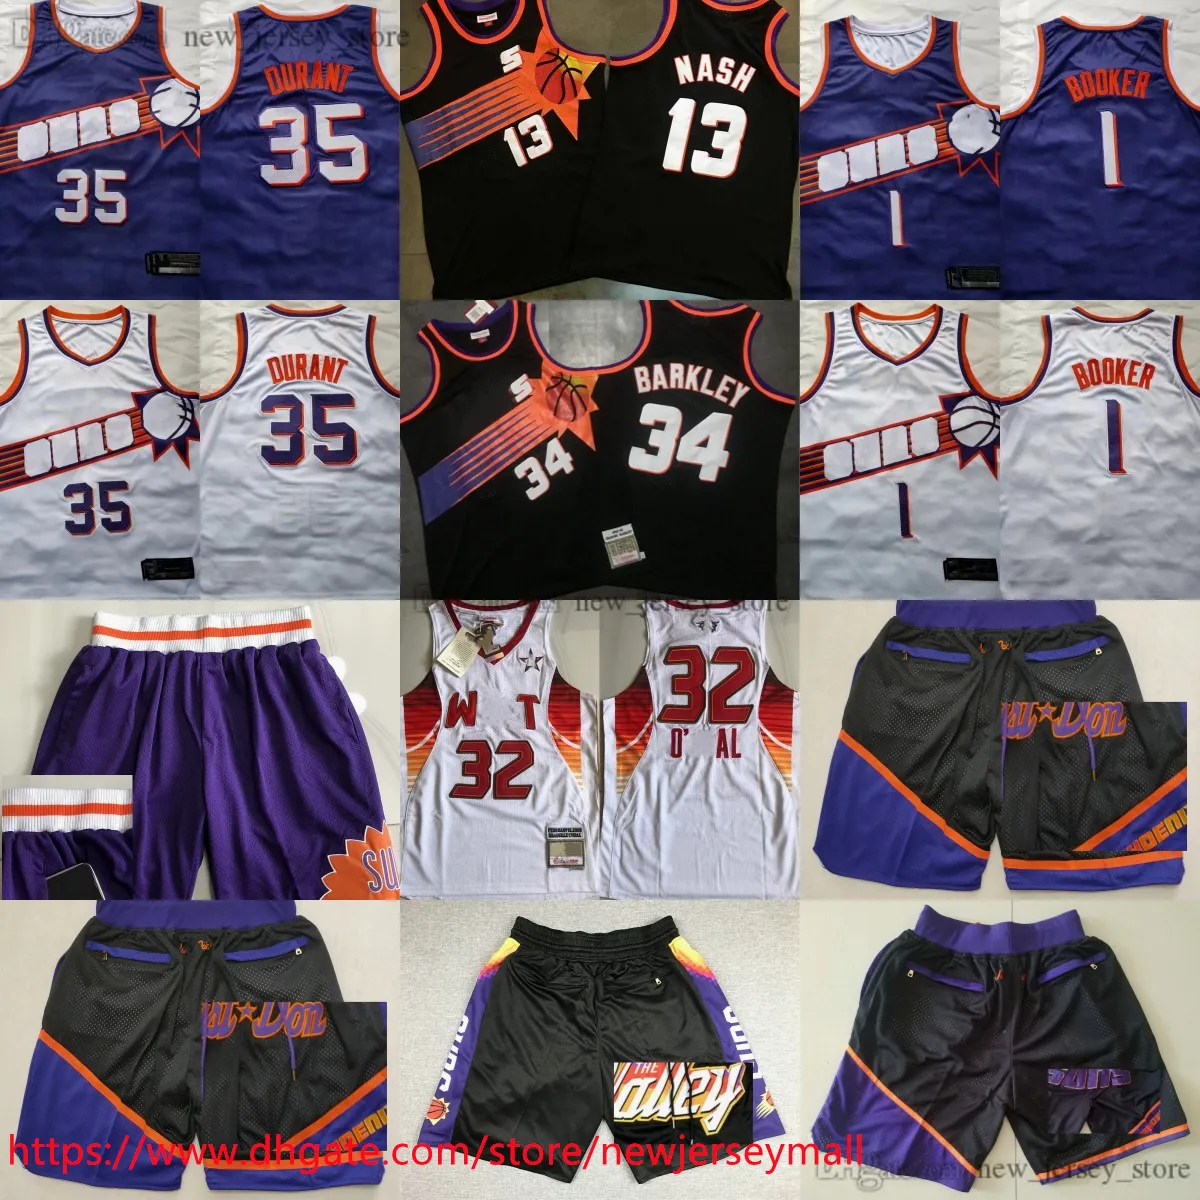 Аутентичная вышивка Баскетбол 1 DevinBooker 35 KevinDurant Jersey Classic 1996-97 Vintage 13 Steve Nash CharlesBarkley Трикотажные изделия с настоящей прошитой дышащей спортивной одеждой